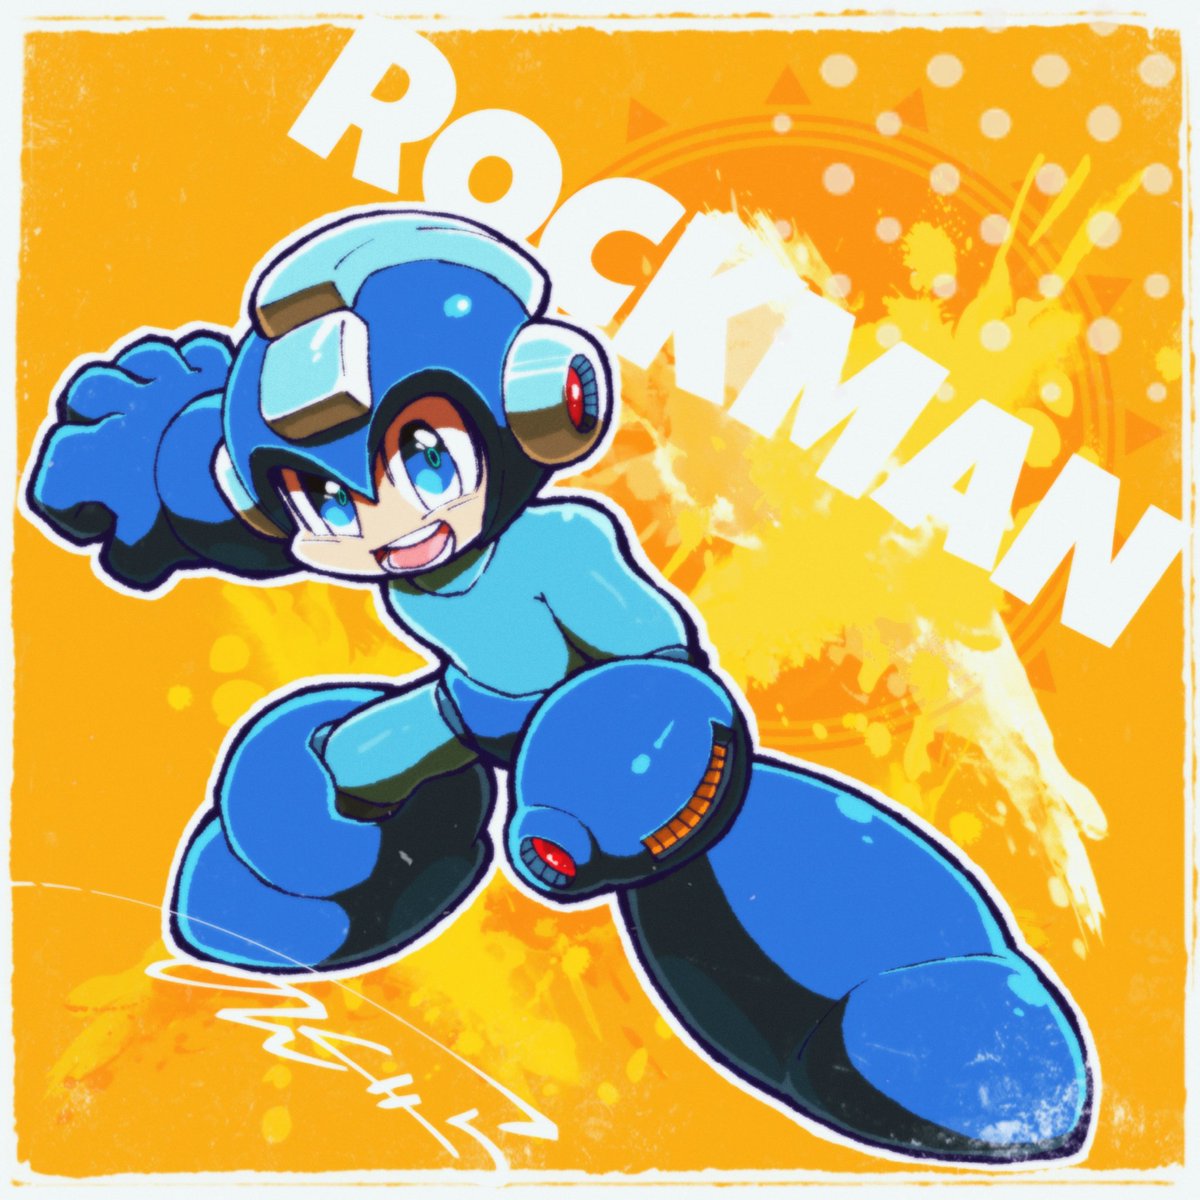 ロックマン(キャラクター) 「ろっくまん! 」|のんぐらのイラスト